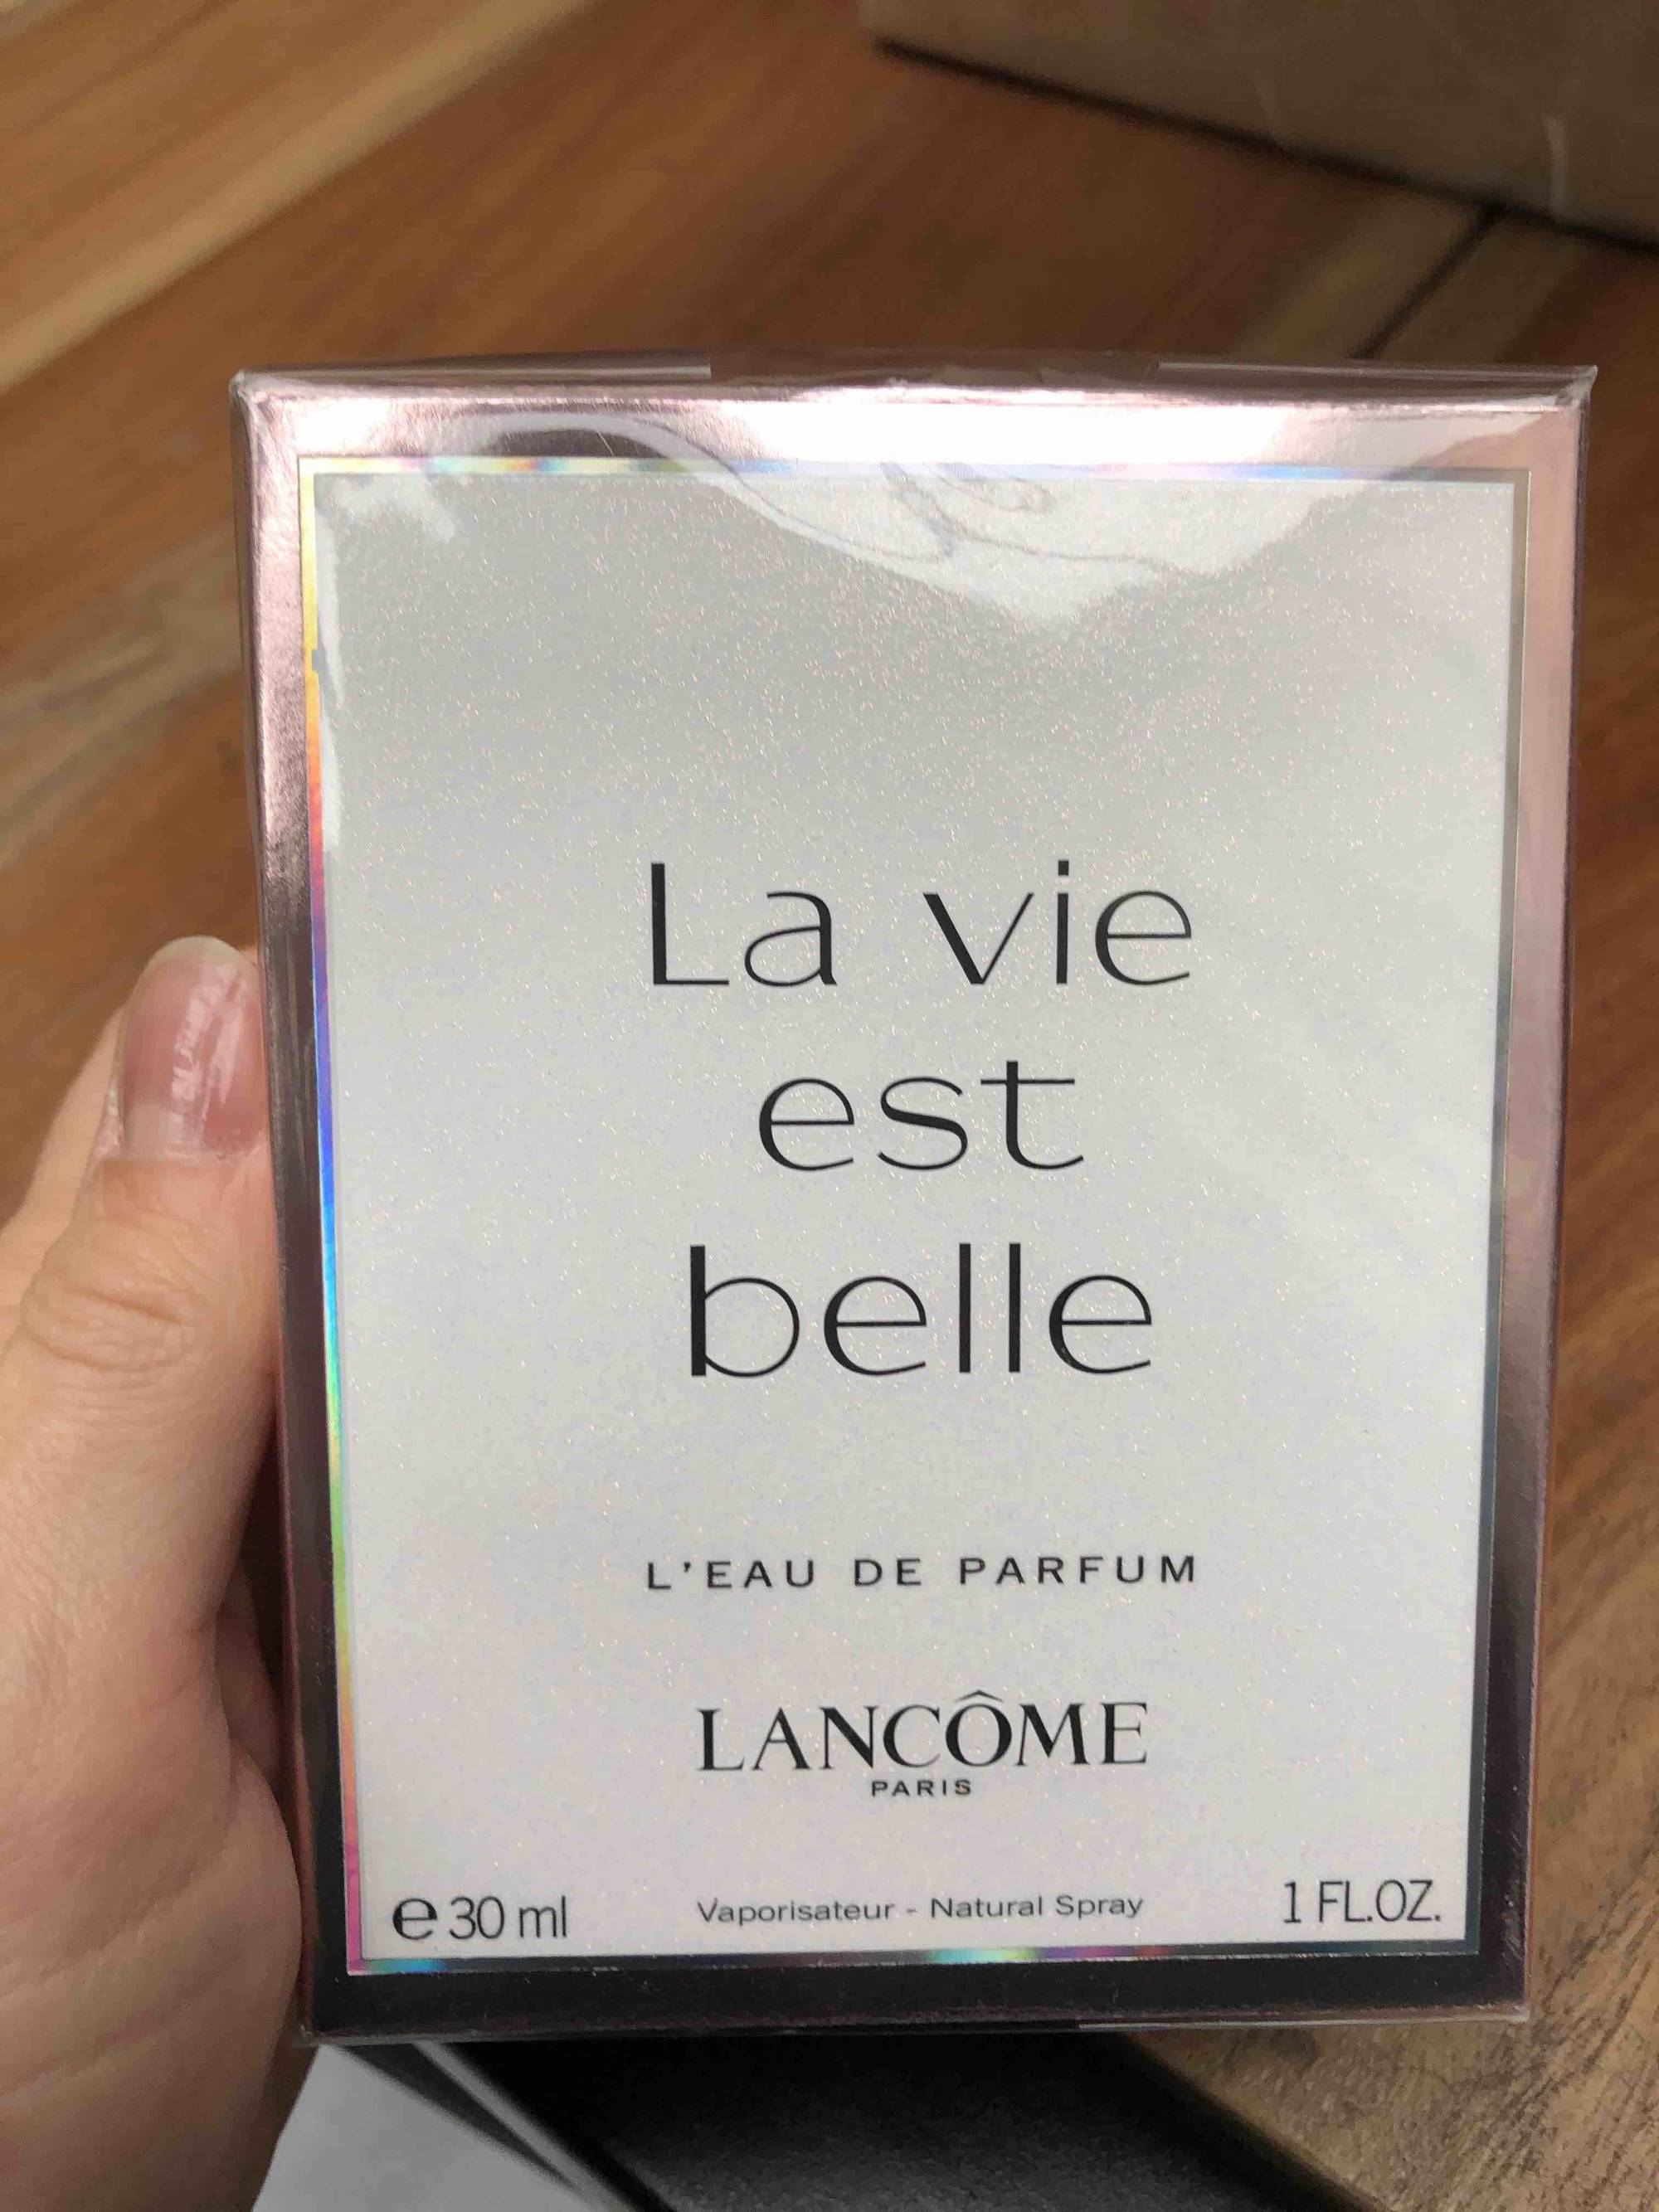 LANCÔME - La vie est belle L'eau de parfum